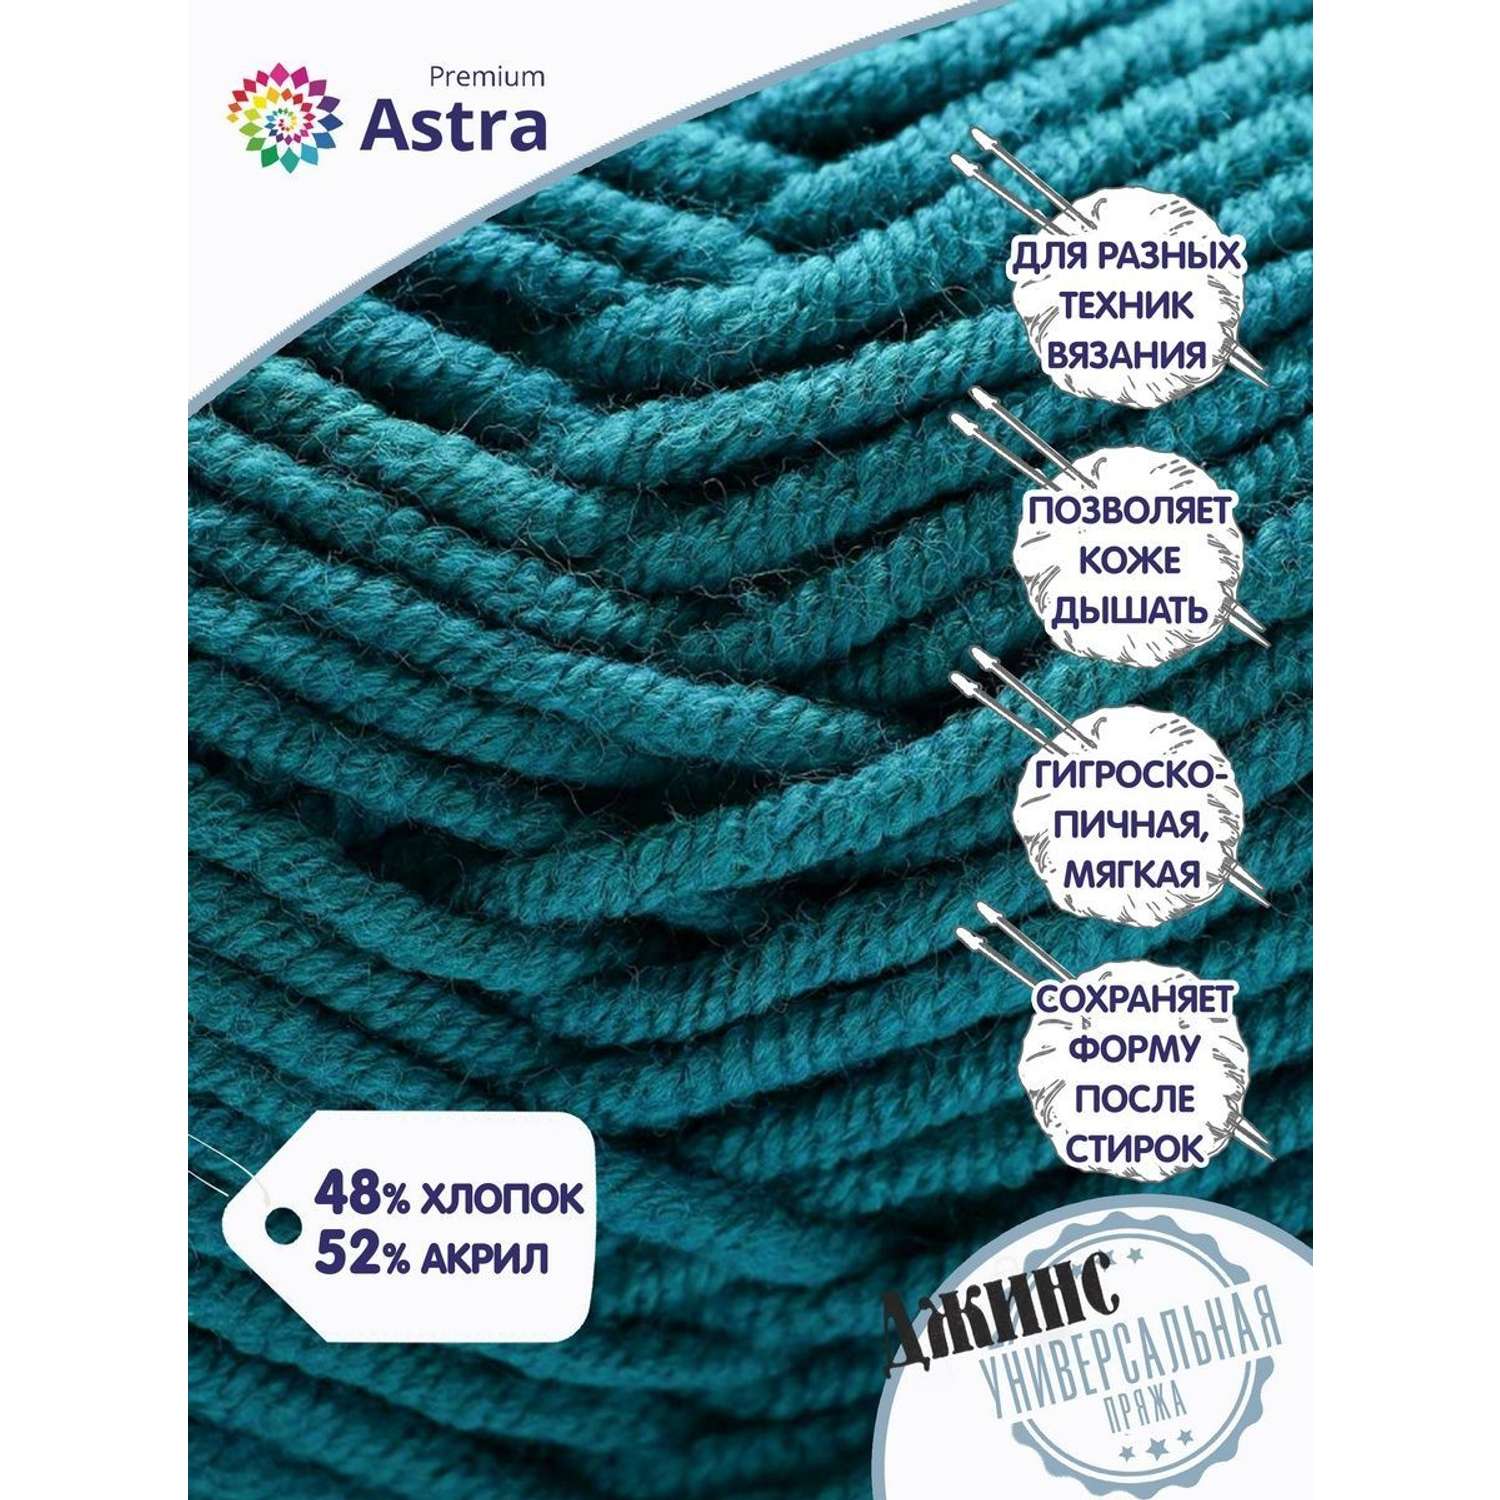 Пряжа для вязания Astra Premium джинс для повседневной одежды акрил хлопок 50 гр 135 м 490 темно-зеленый 4 мотка - фото 2